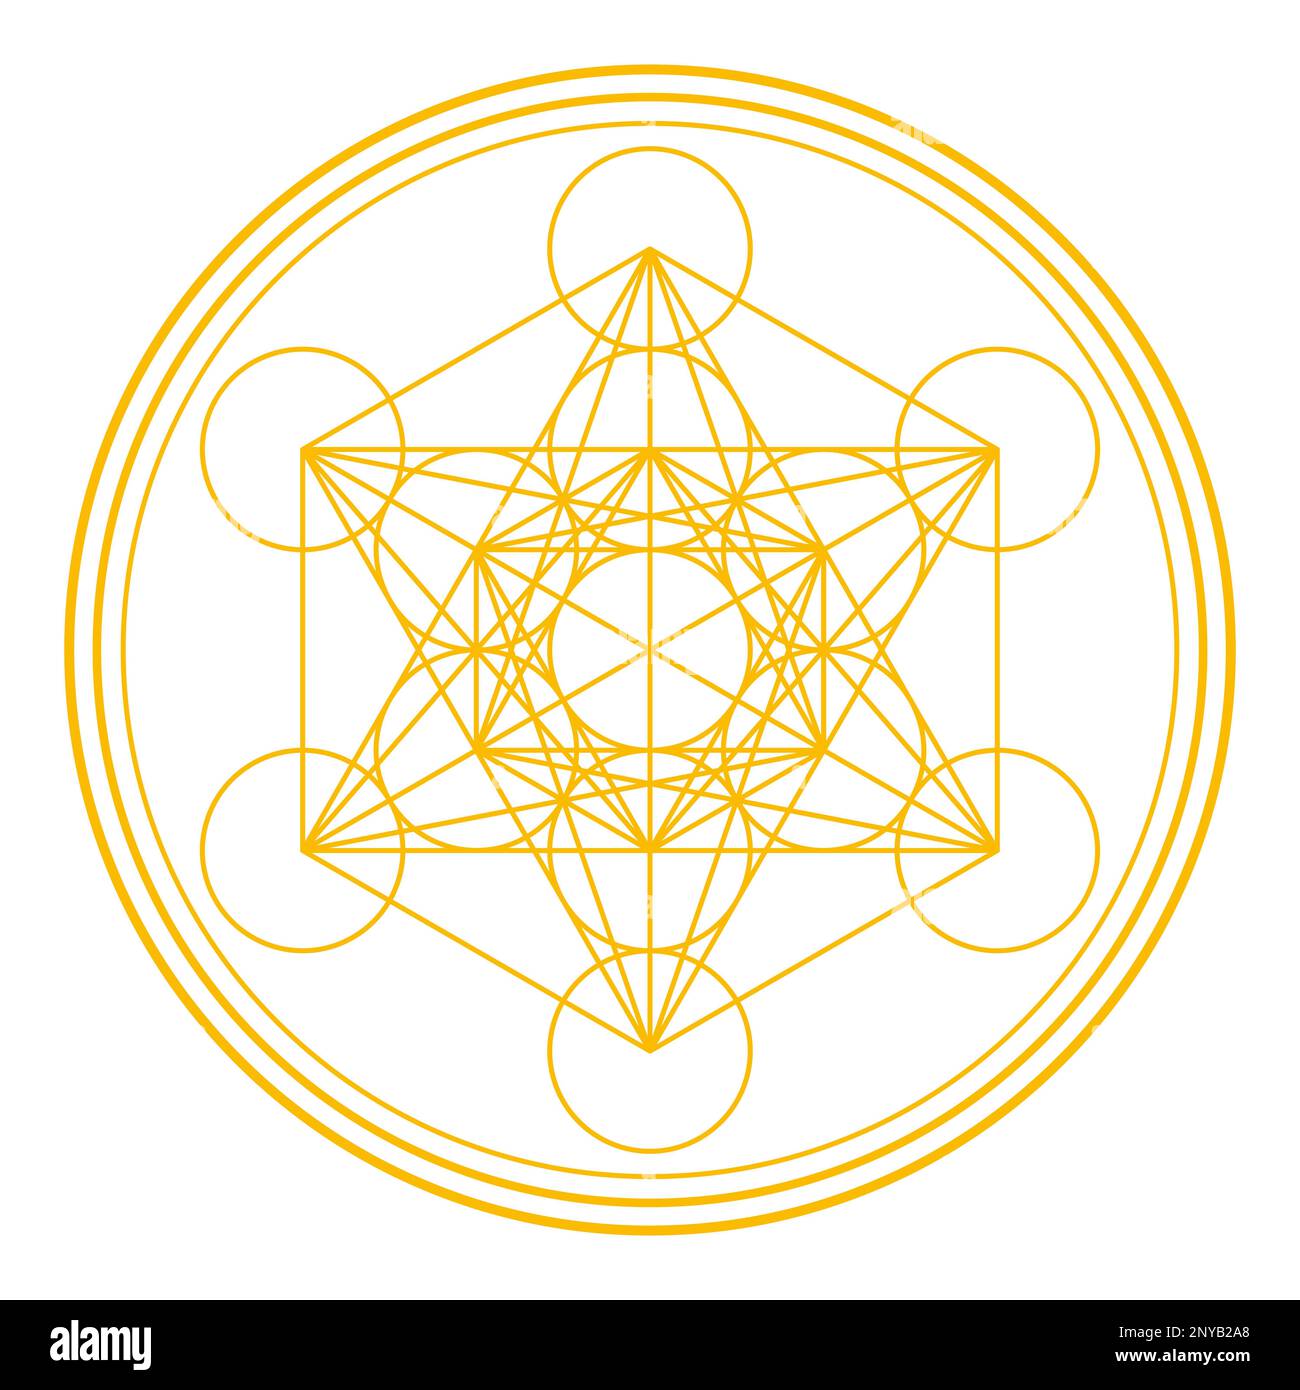 Golden Metatrons Cube, circondato e incorniciato da tre cerchi. Simbolo mistico, derivato dal Fiore della vita. Foto Stock